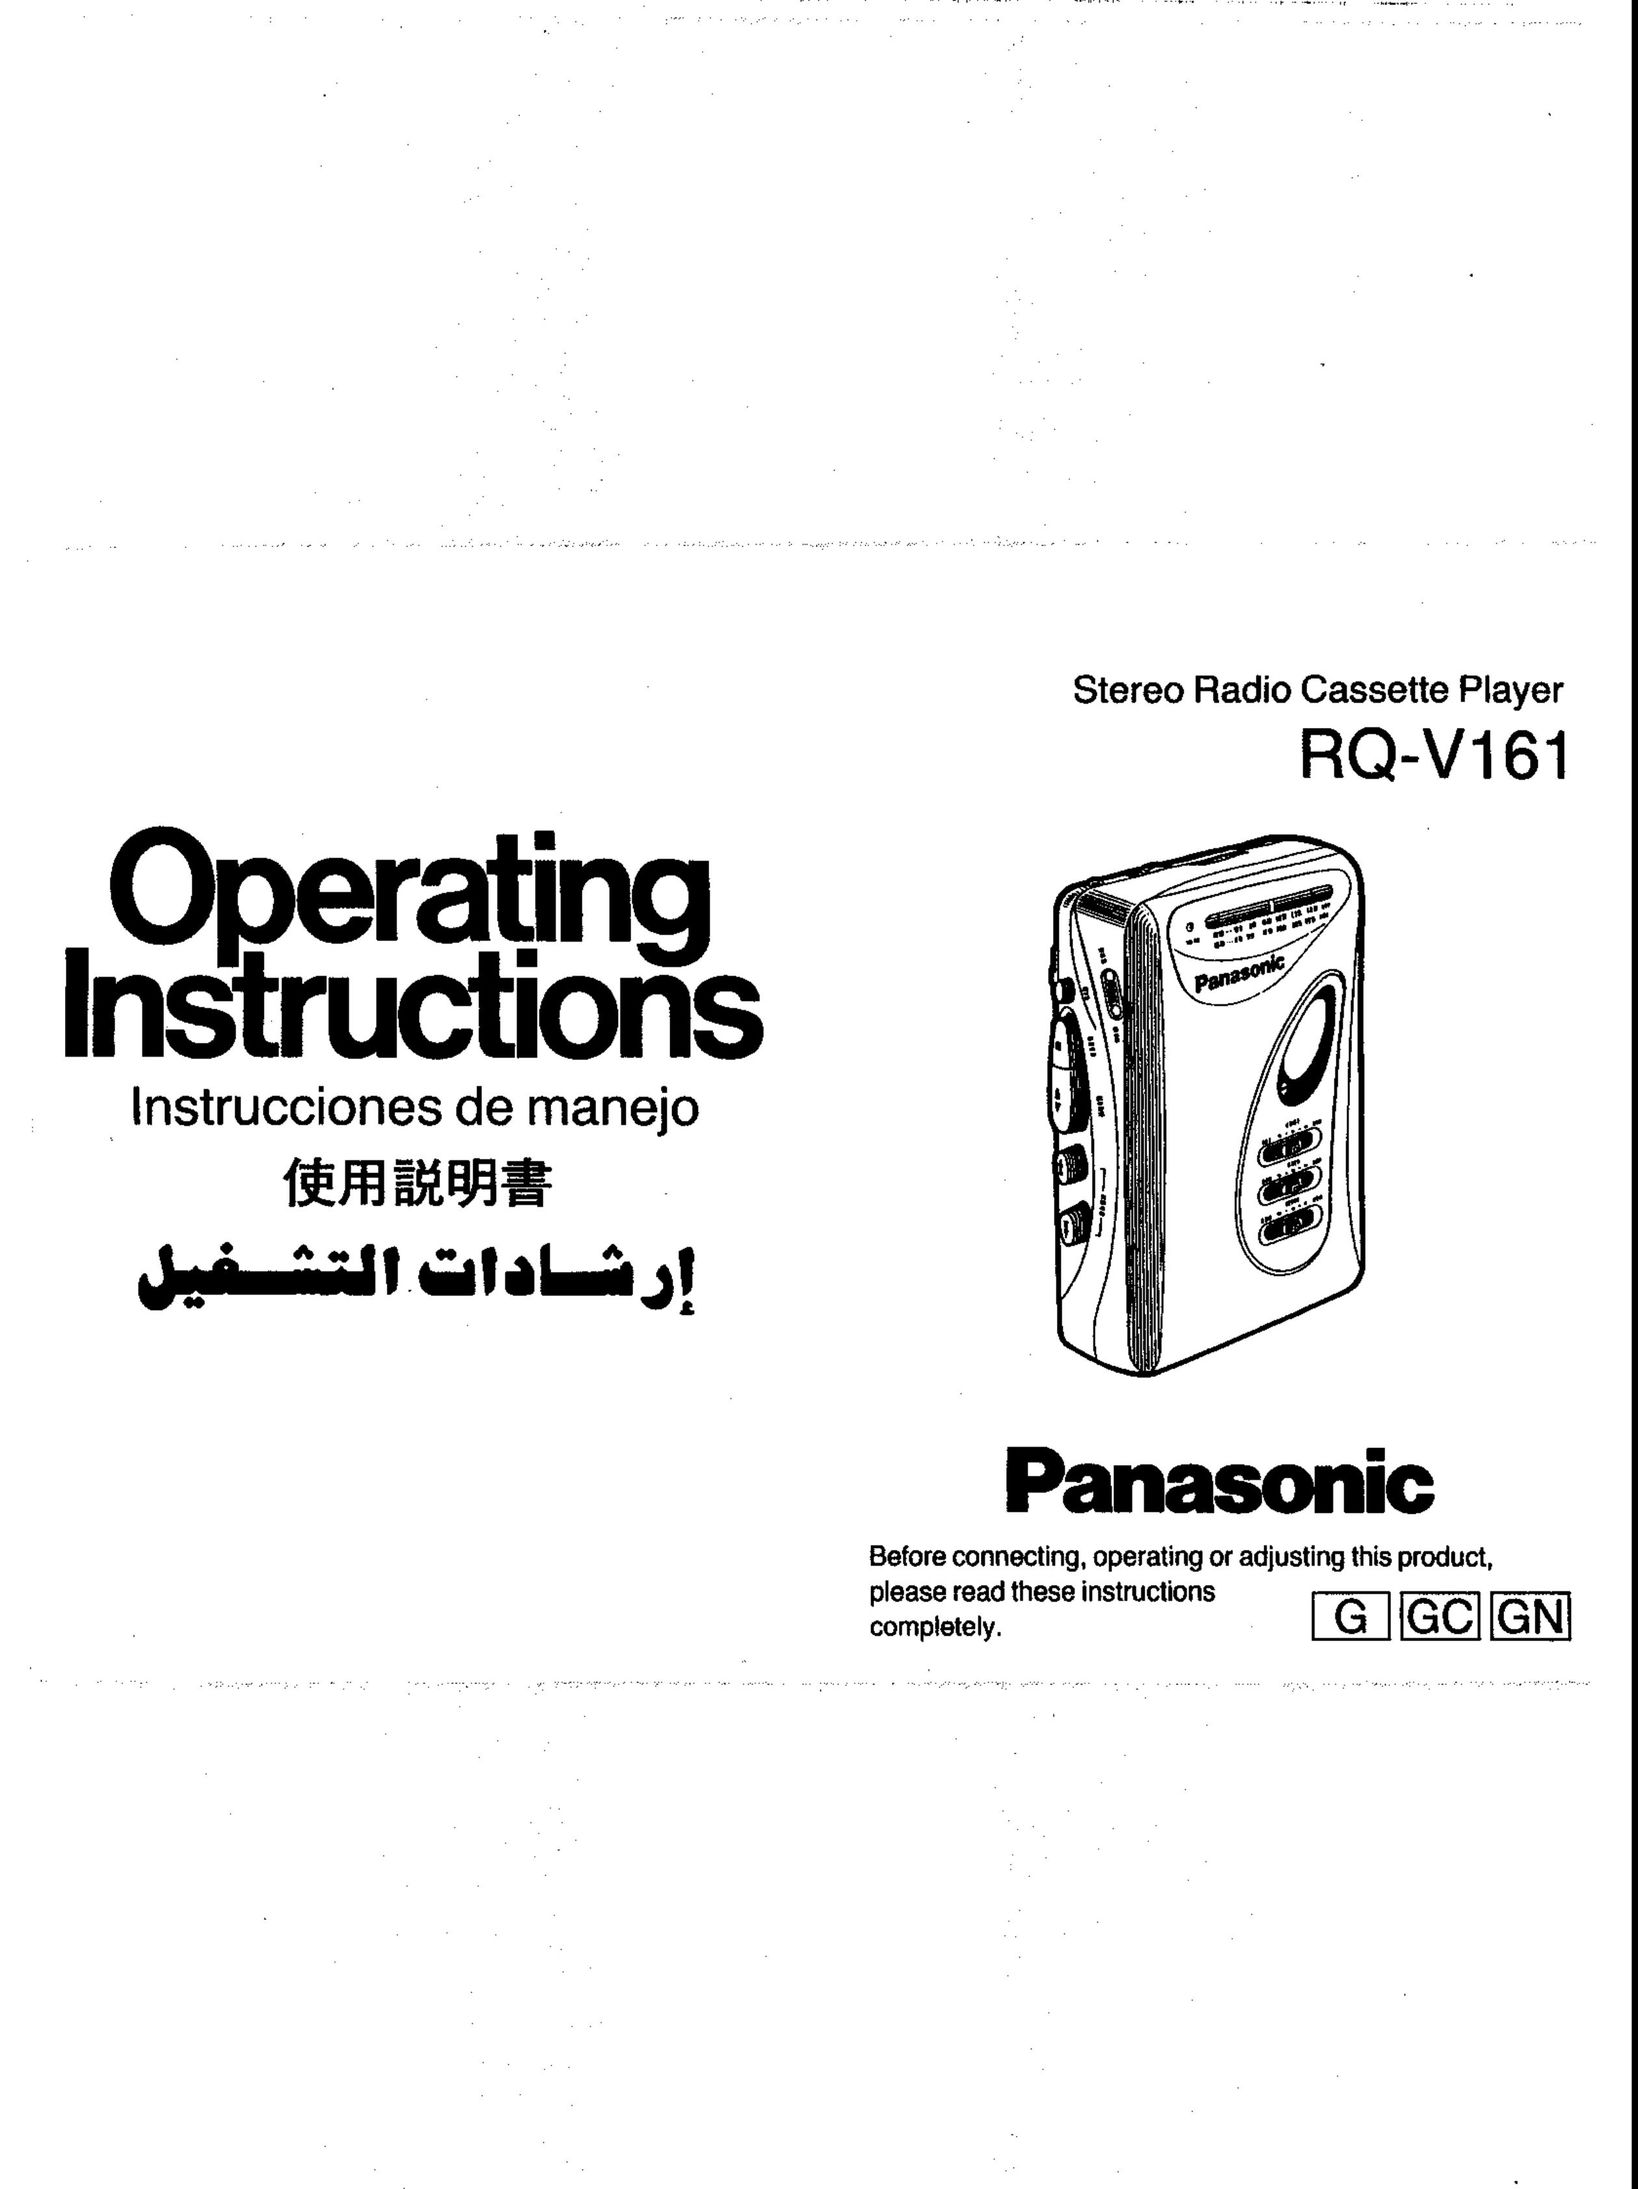 Panasonic RQ-V161 Cassette Player User Manual